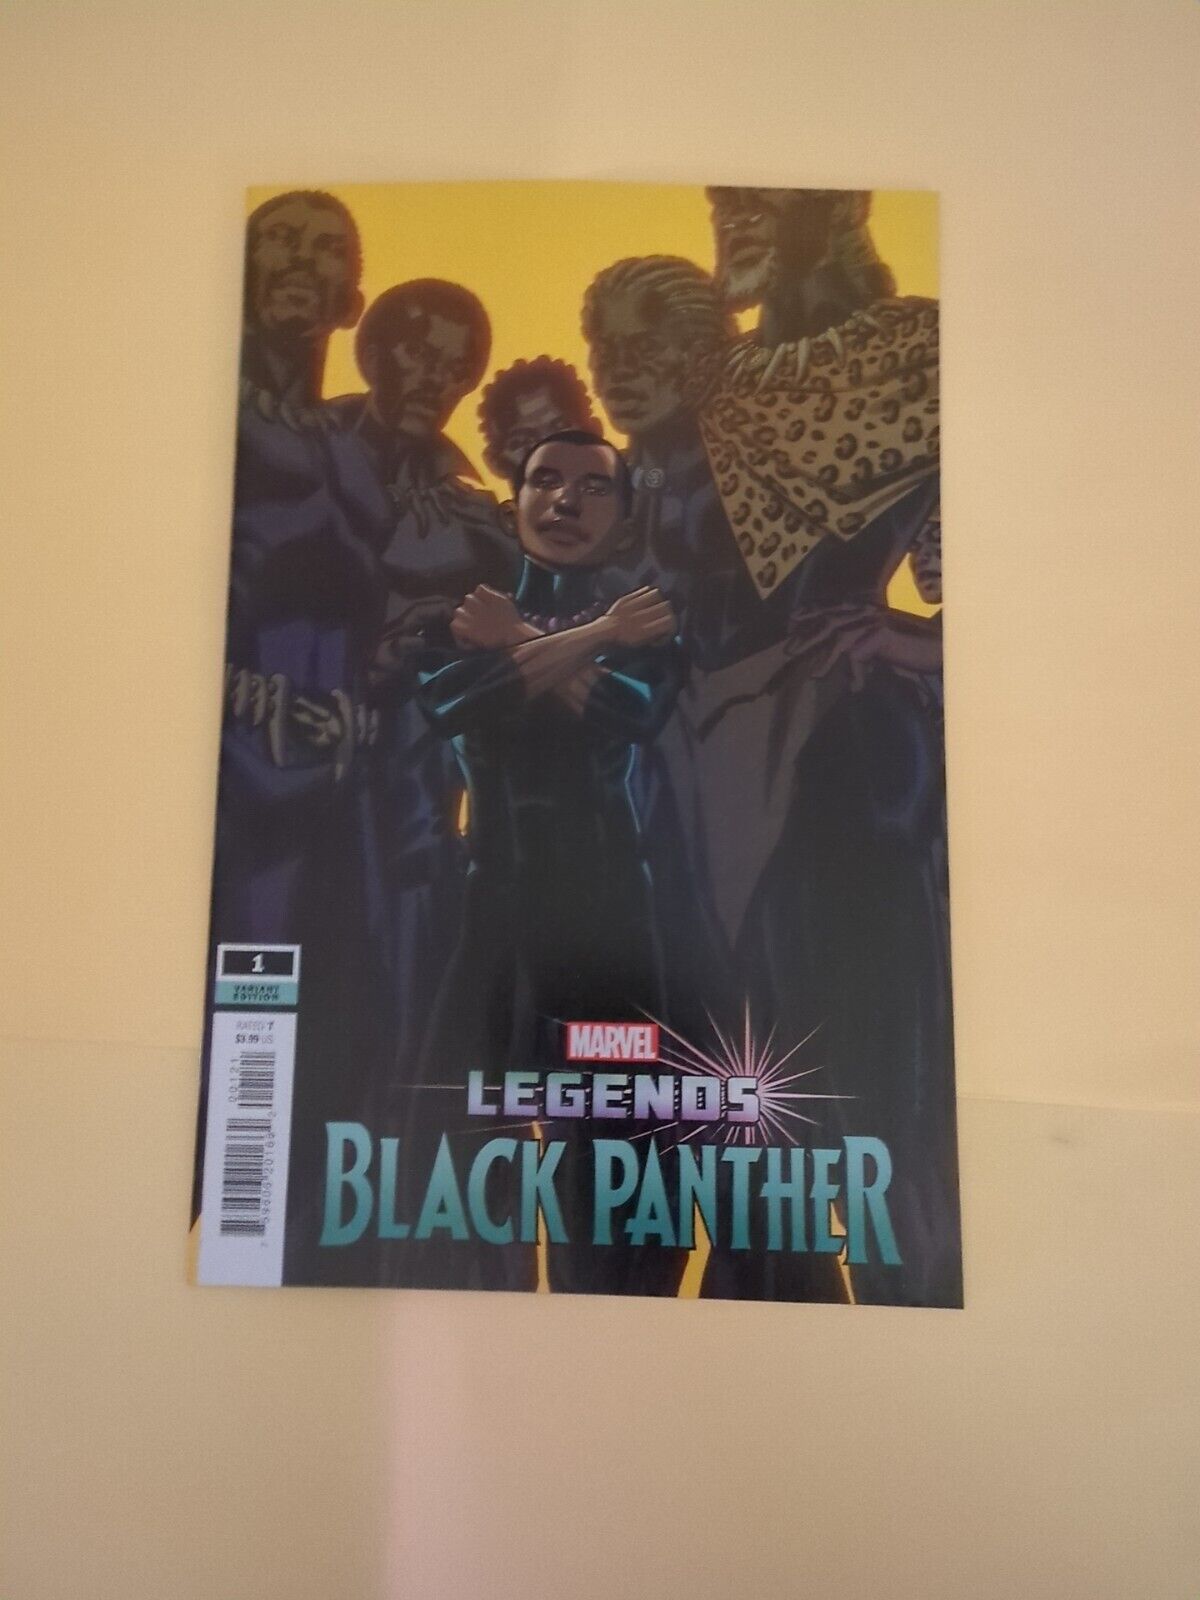 Black Panther Legends #1 Brian Stelfreeze Variant cvr B, Marvel (2021), VG cond.